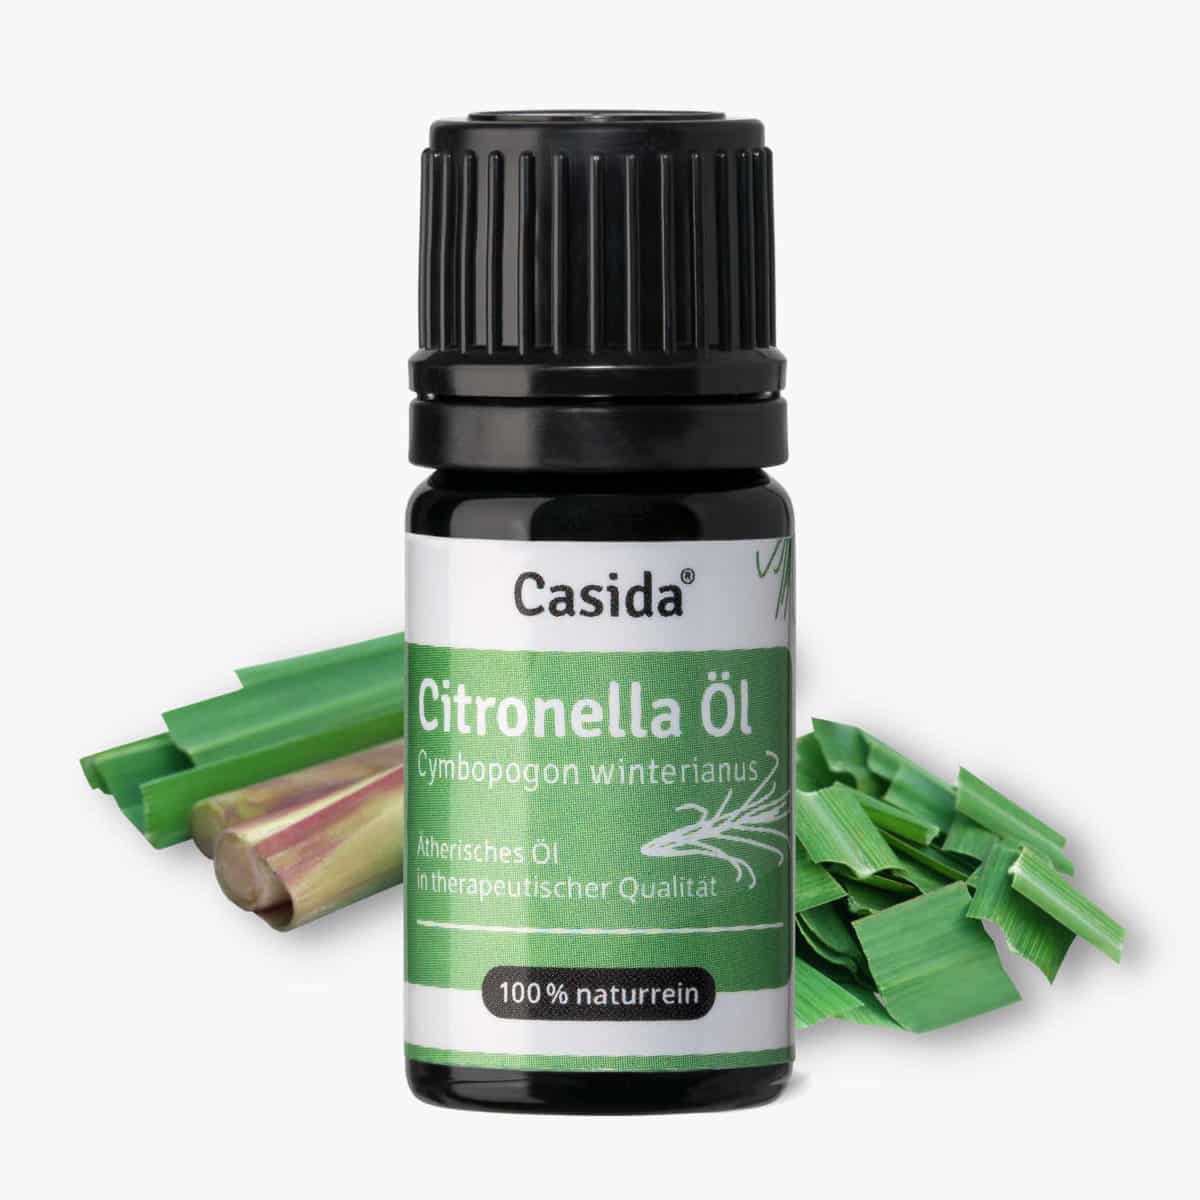 Casida Citronella Oil natural and pure – 5 ml 18186063 PZN Apotheke ätherische Öle Diffuser Cymbopogon winterianus